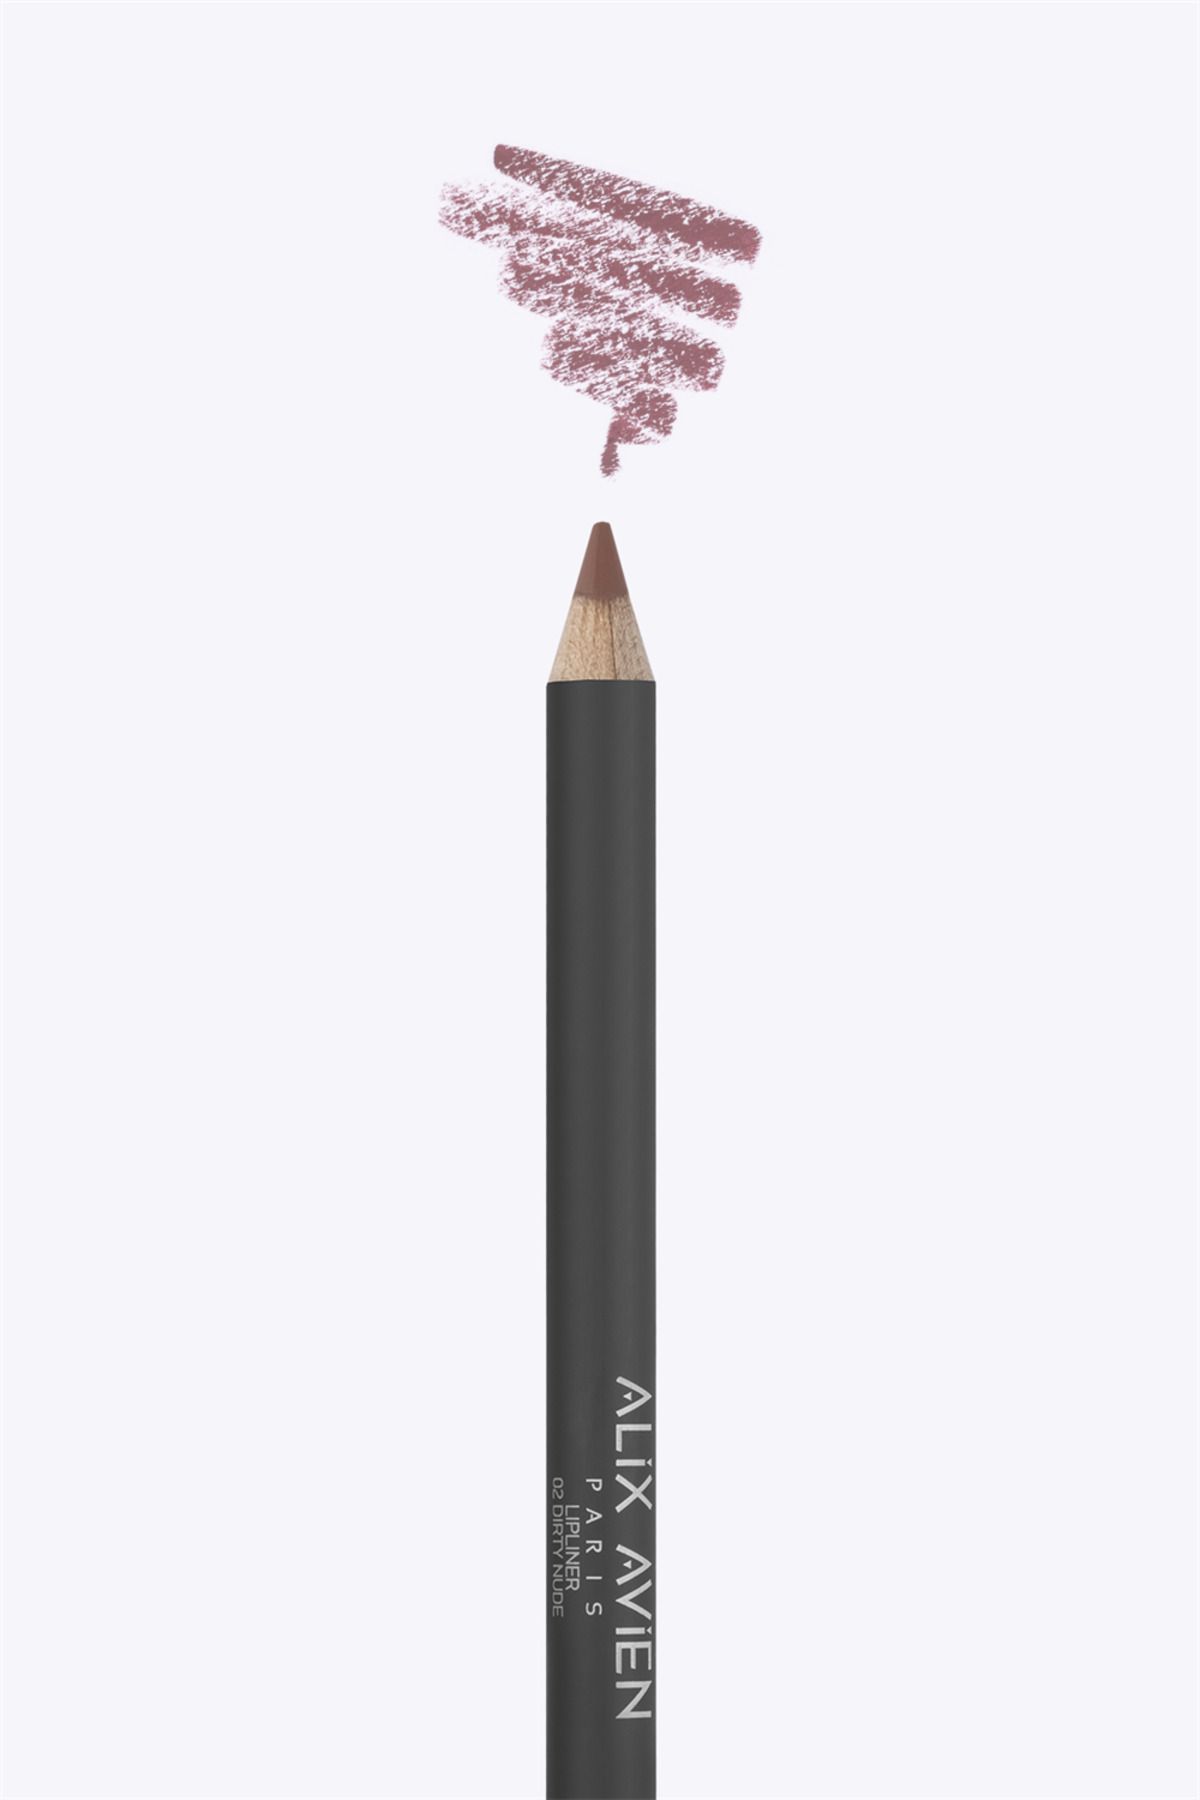 Alix Avien Dudak Kalemi Lipliner Pencil 02 Dirty Nude - Dağılma Yapmayan 6 Saate Kadar Kalıcı Etki